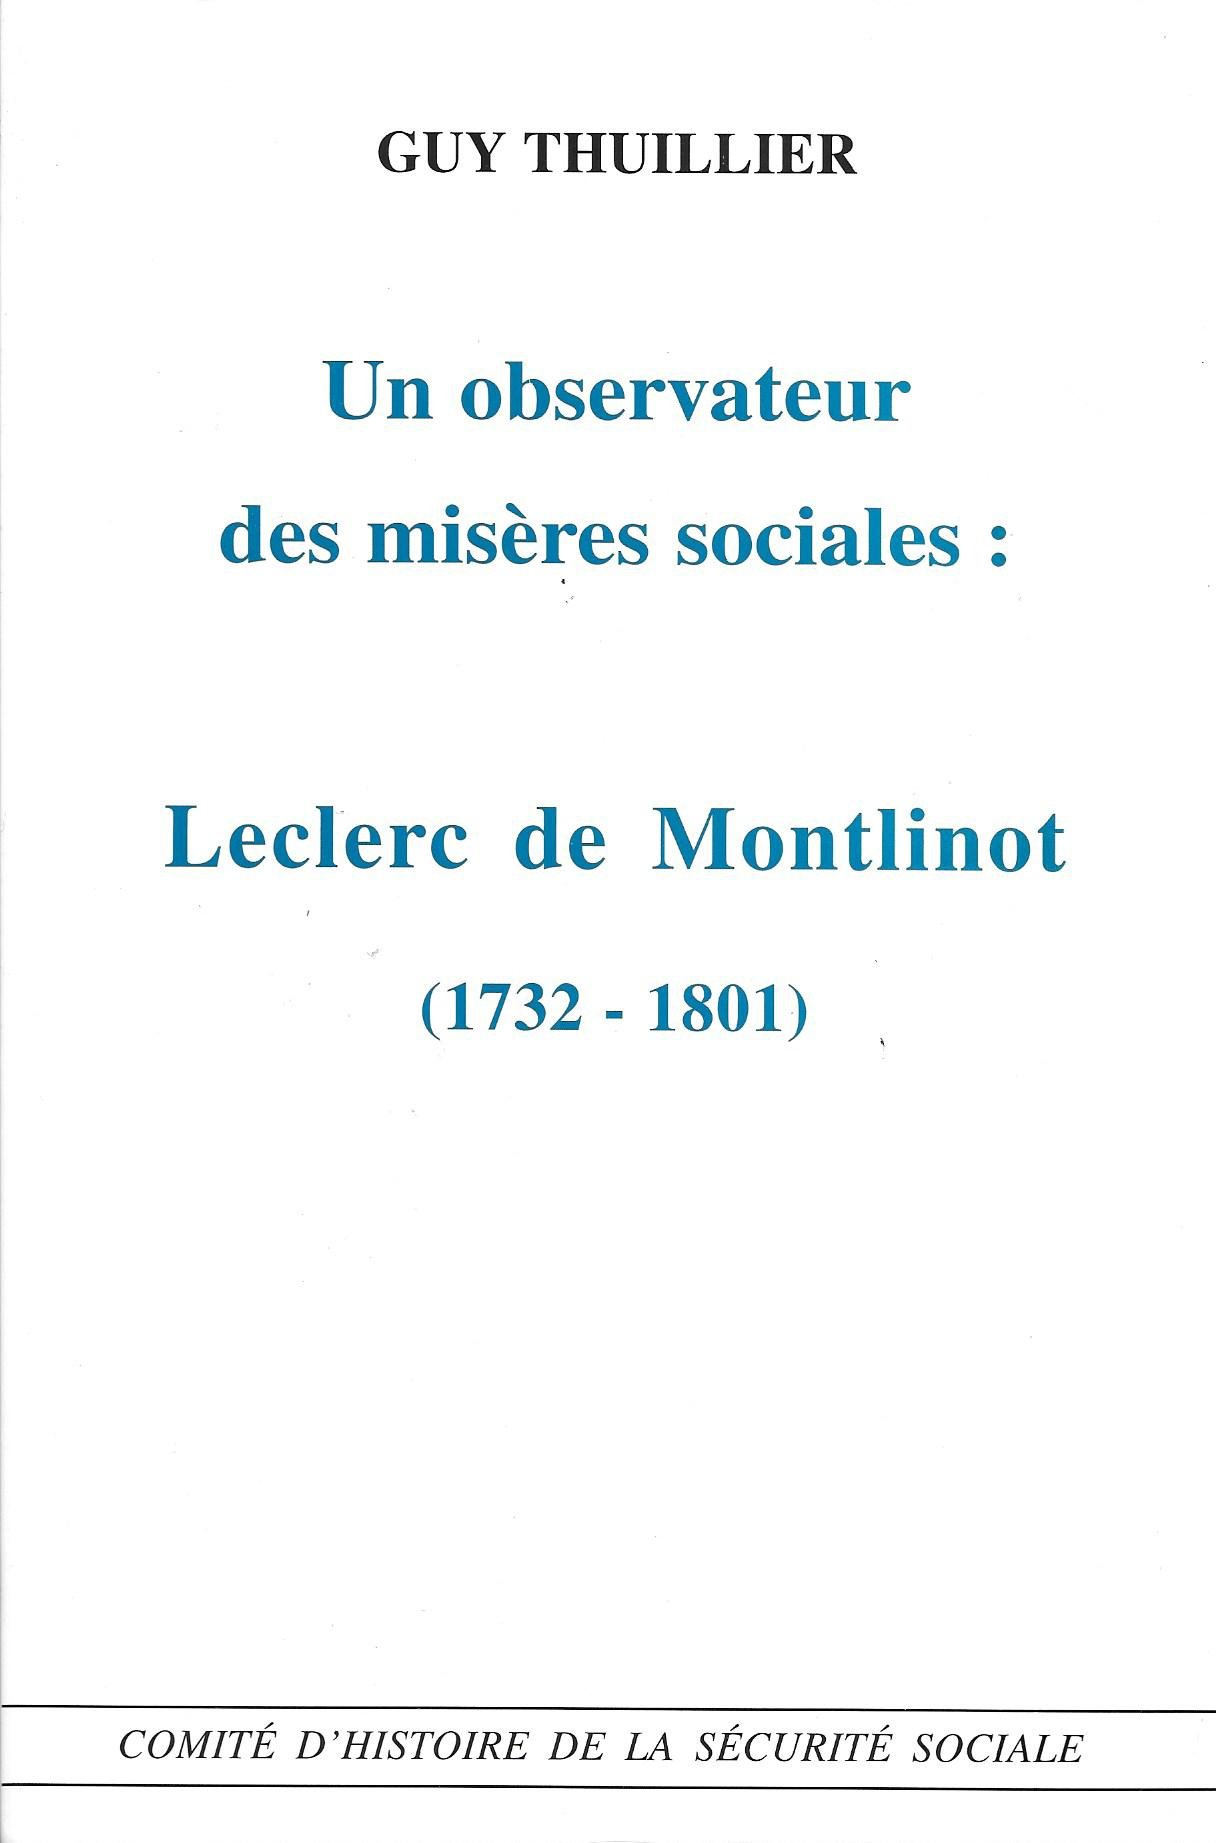 Un observateur des misères sociales : Leclerc de Montlinot, 1732-1801